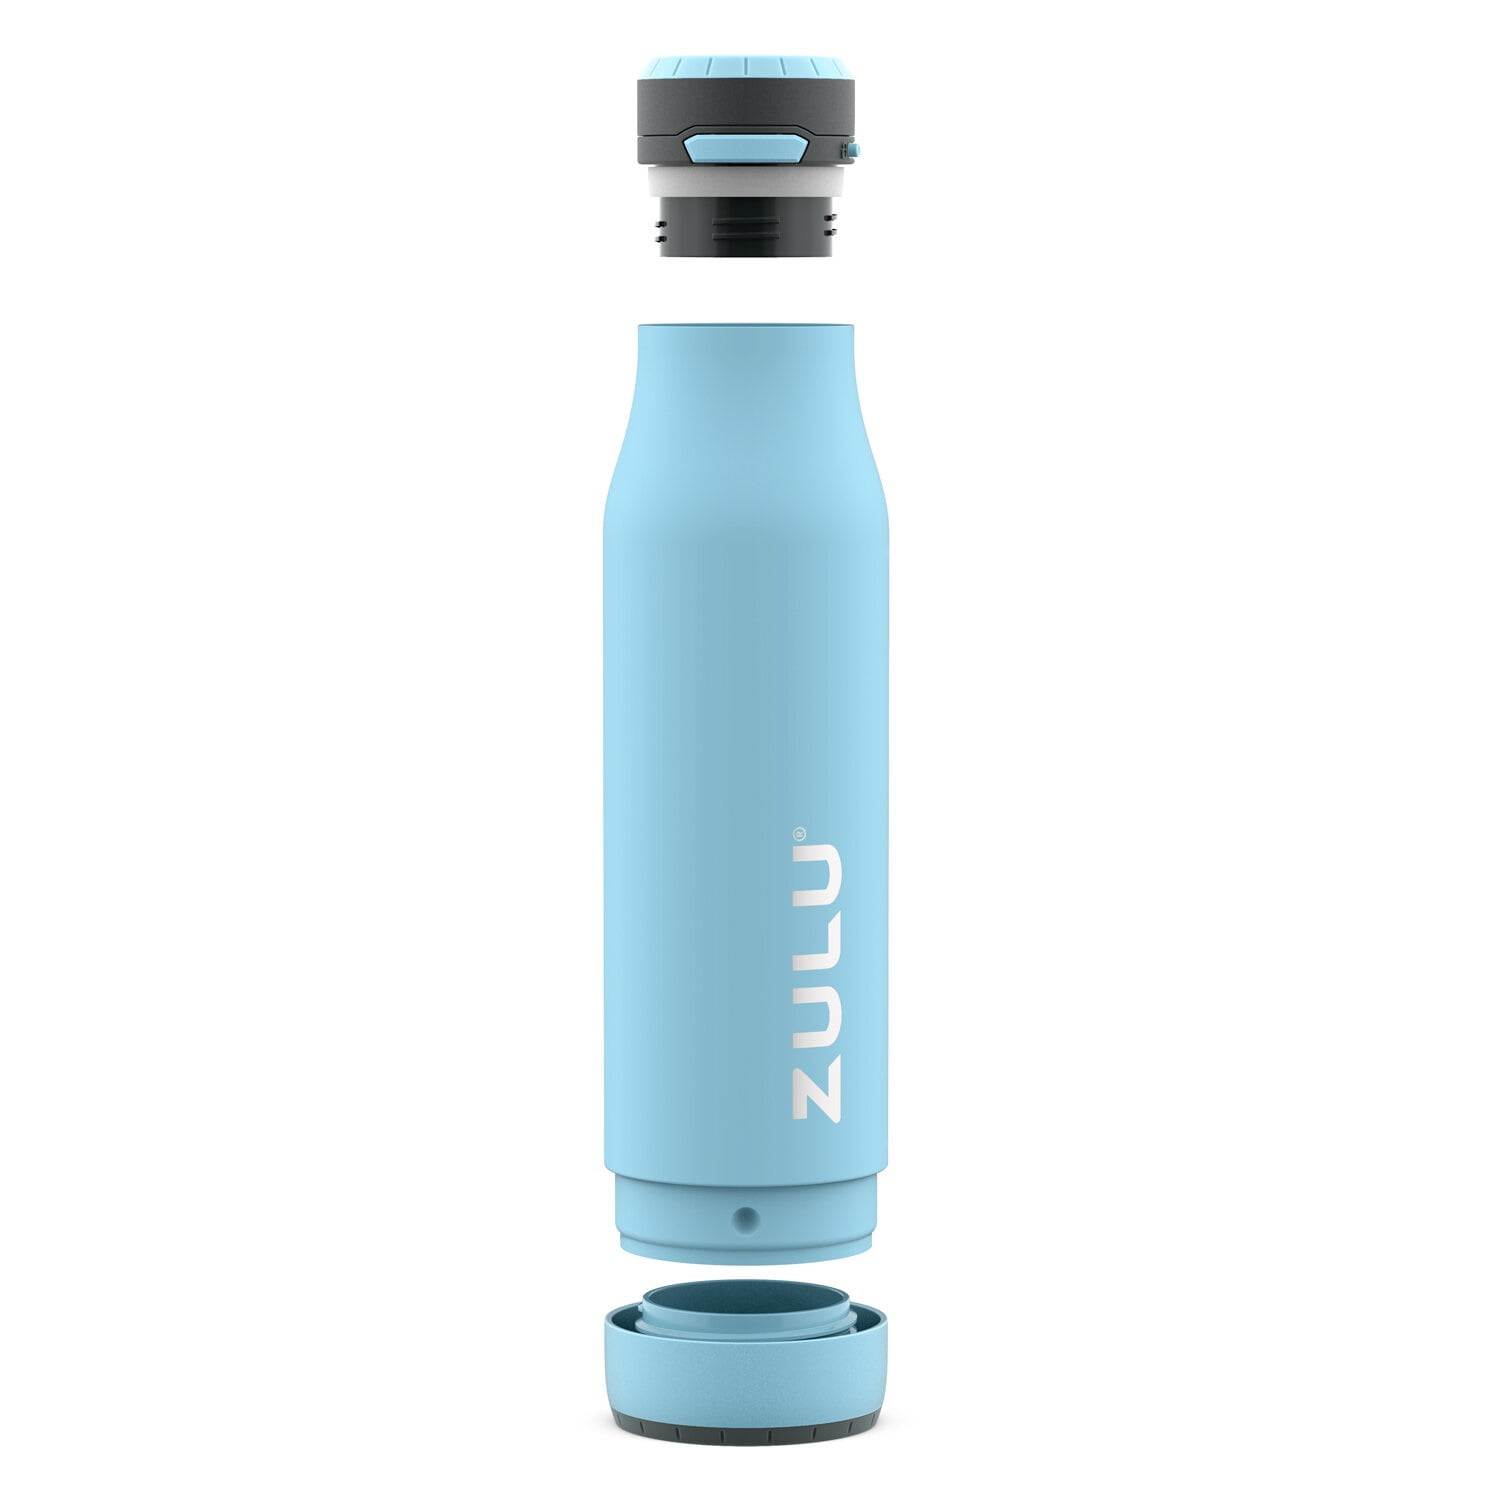 Zulu Flex 12oz Stainless Steel Water Bottle - Blue/Orange